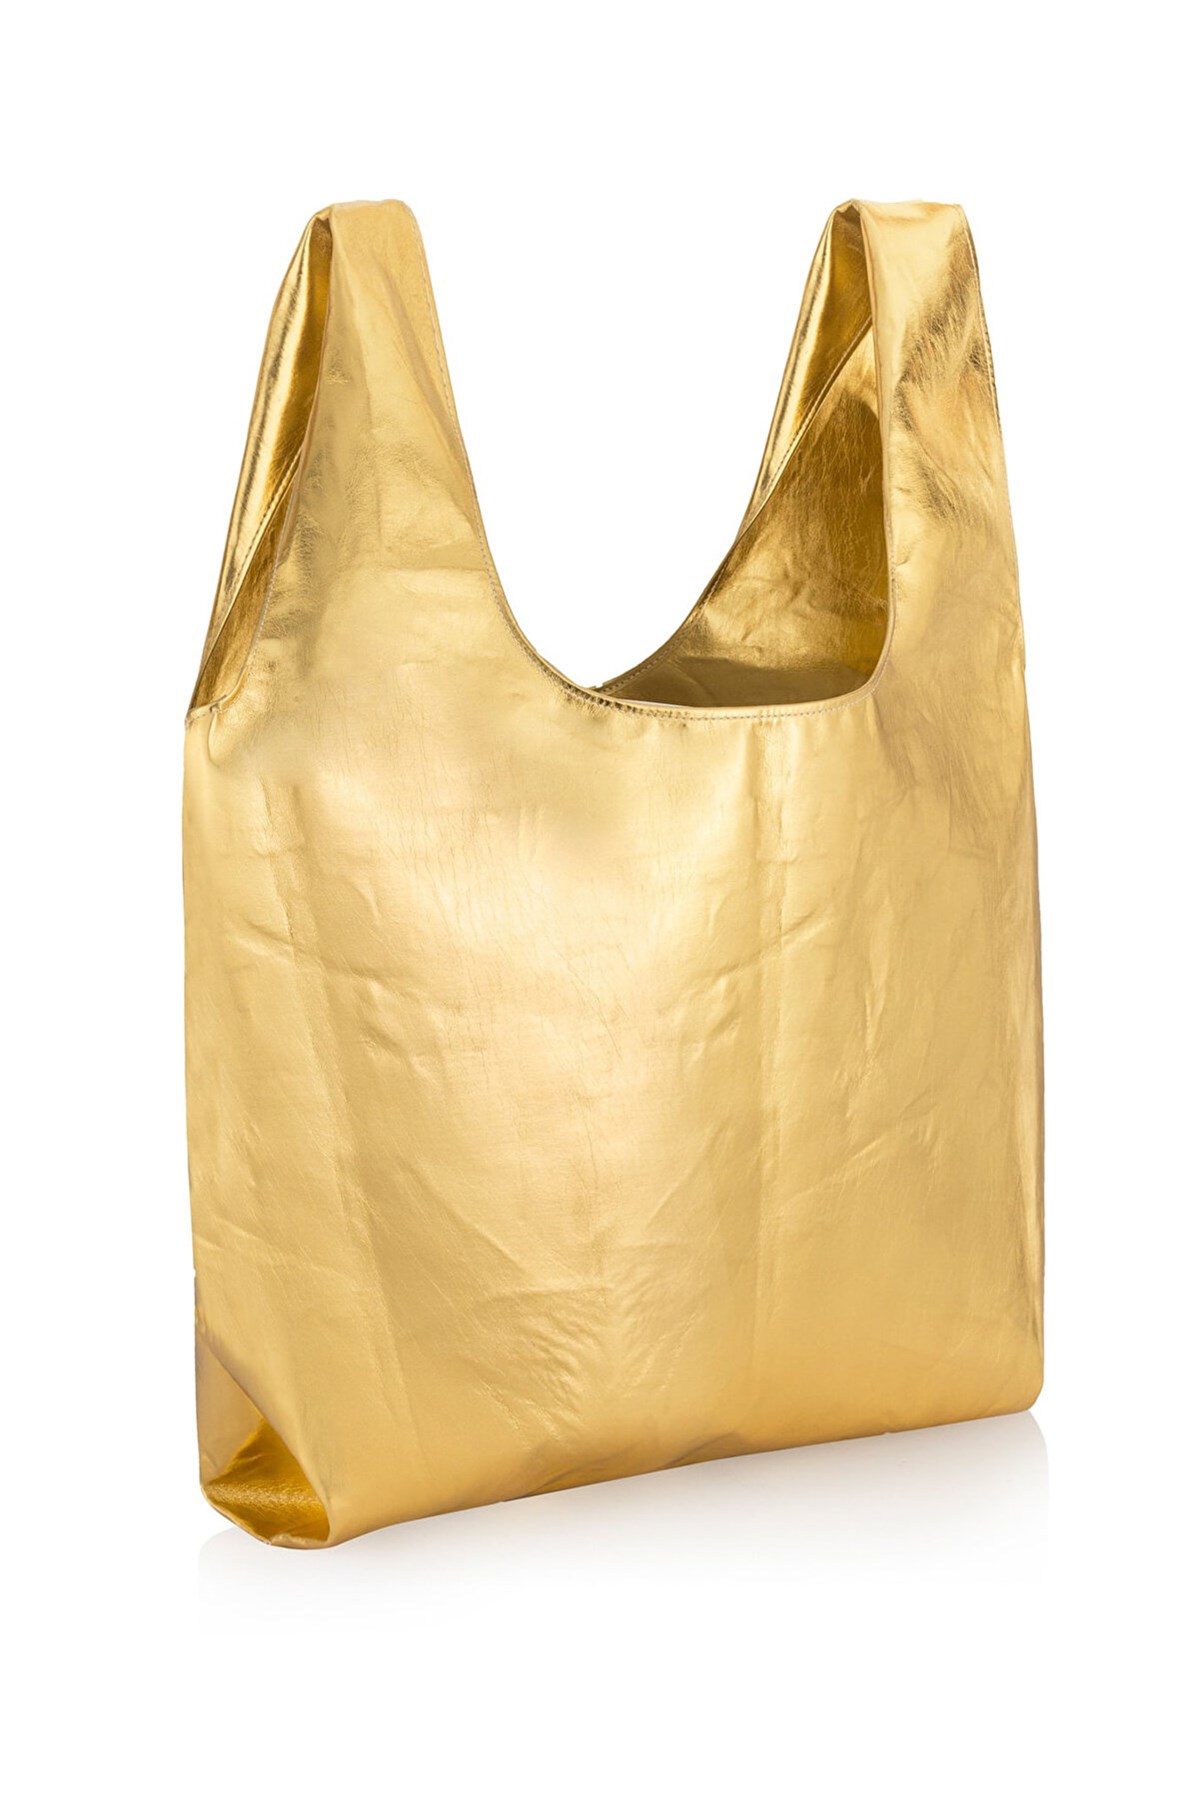 İPEKYOL Altın Rengi Çanta